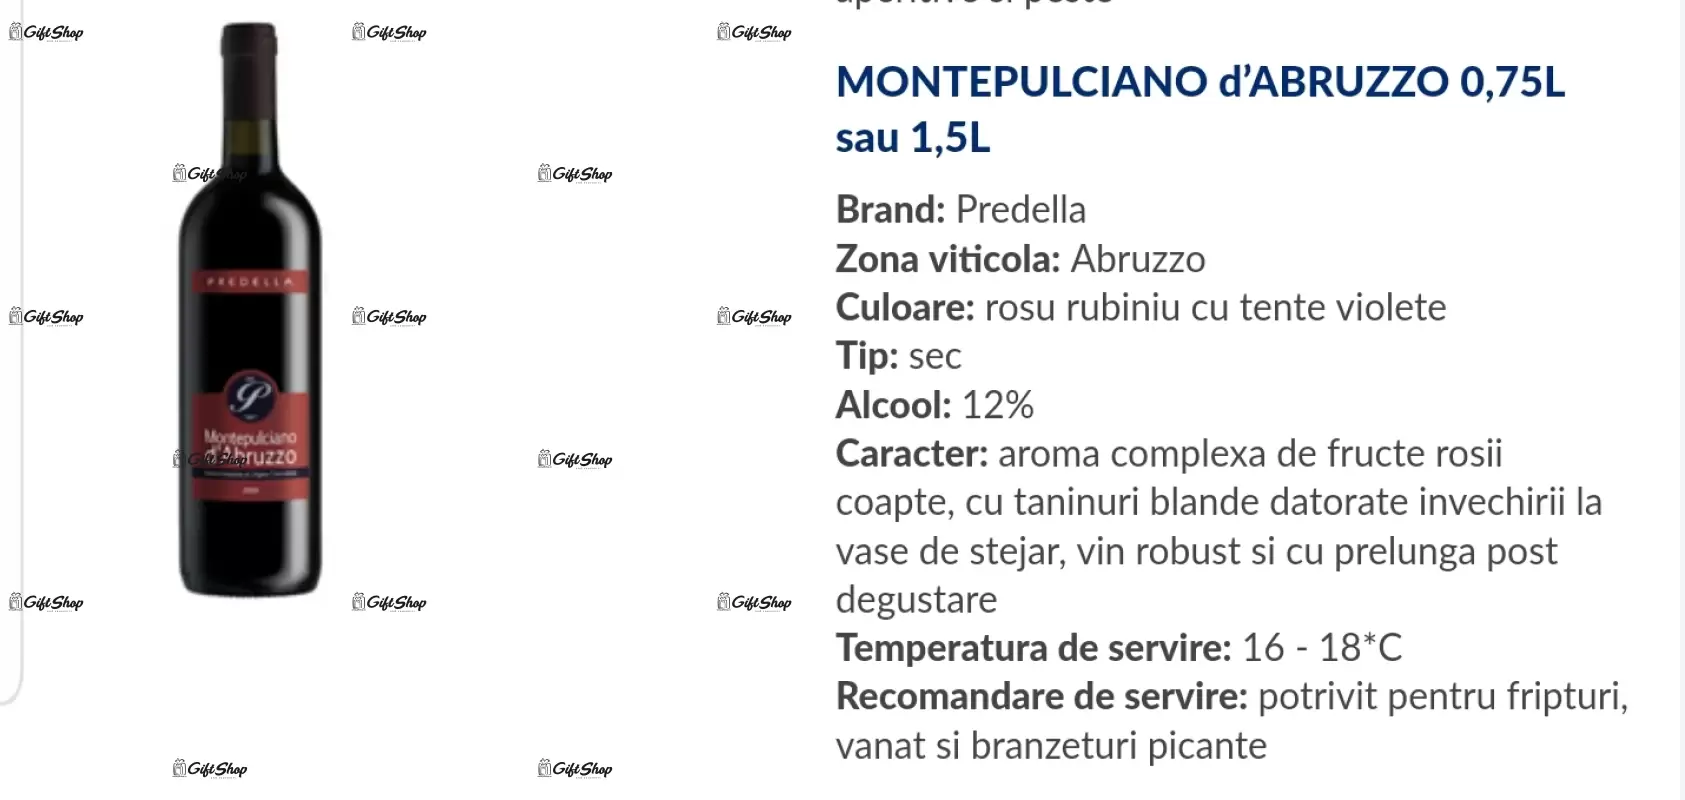 Pentru cel mai bun tata, editie limitata, rosu predellea abruzzo, sec, 12.5% alc.